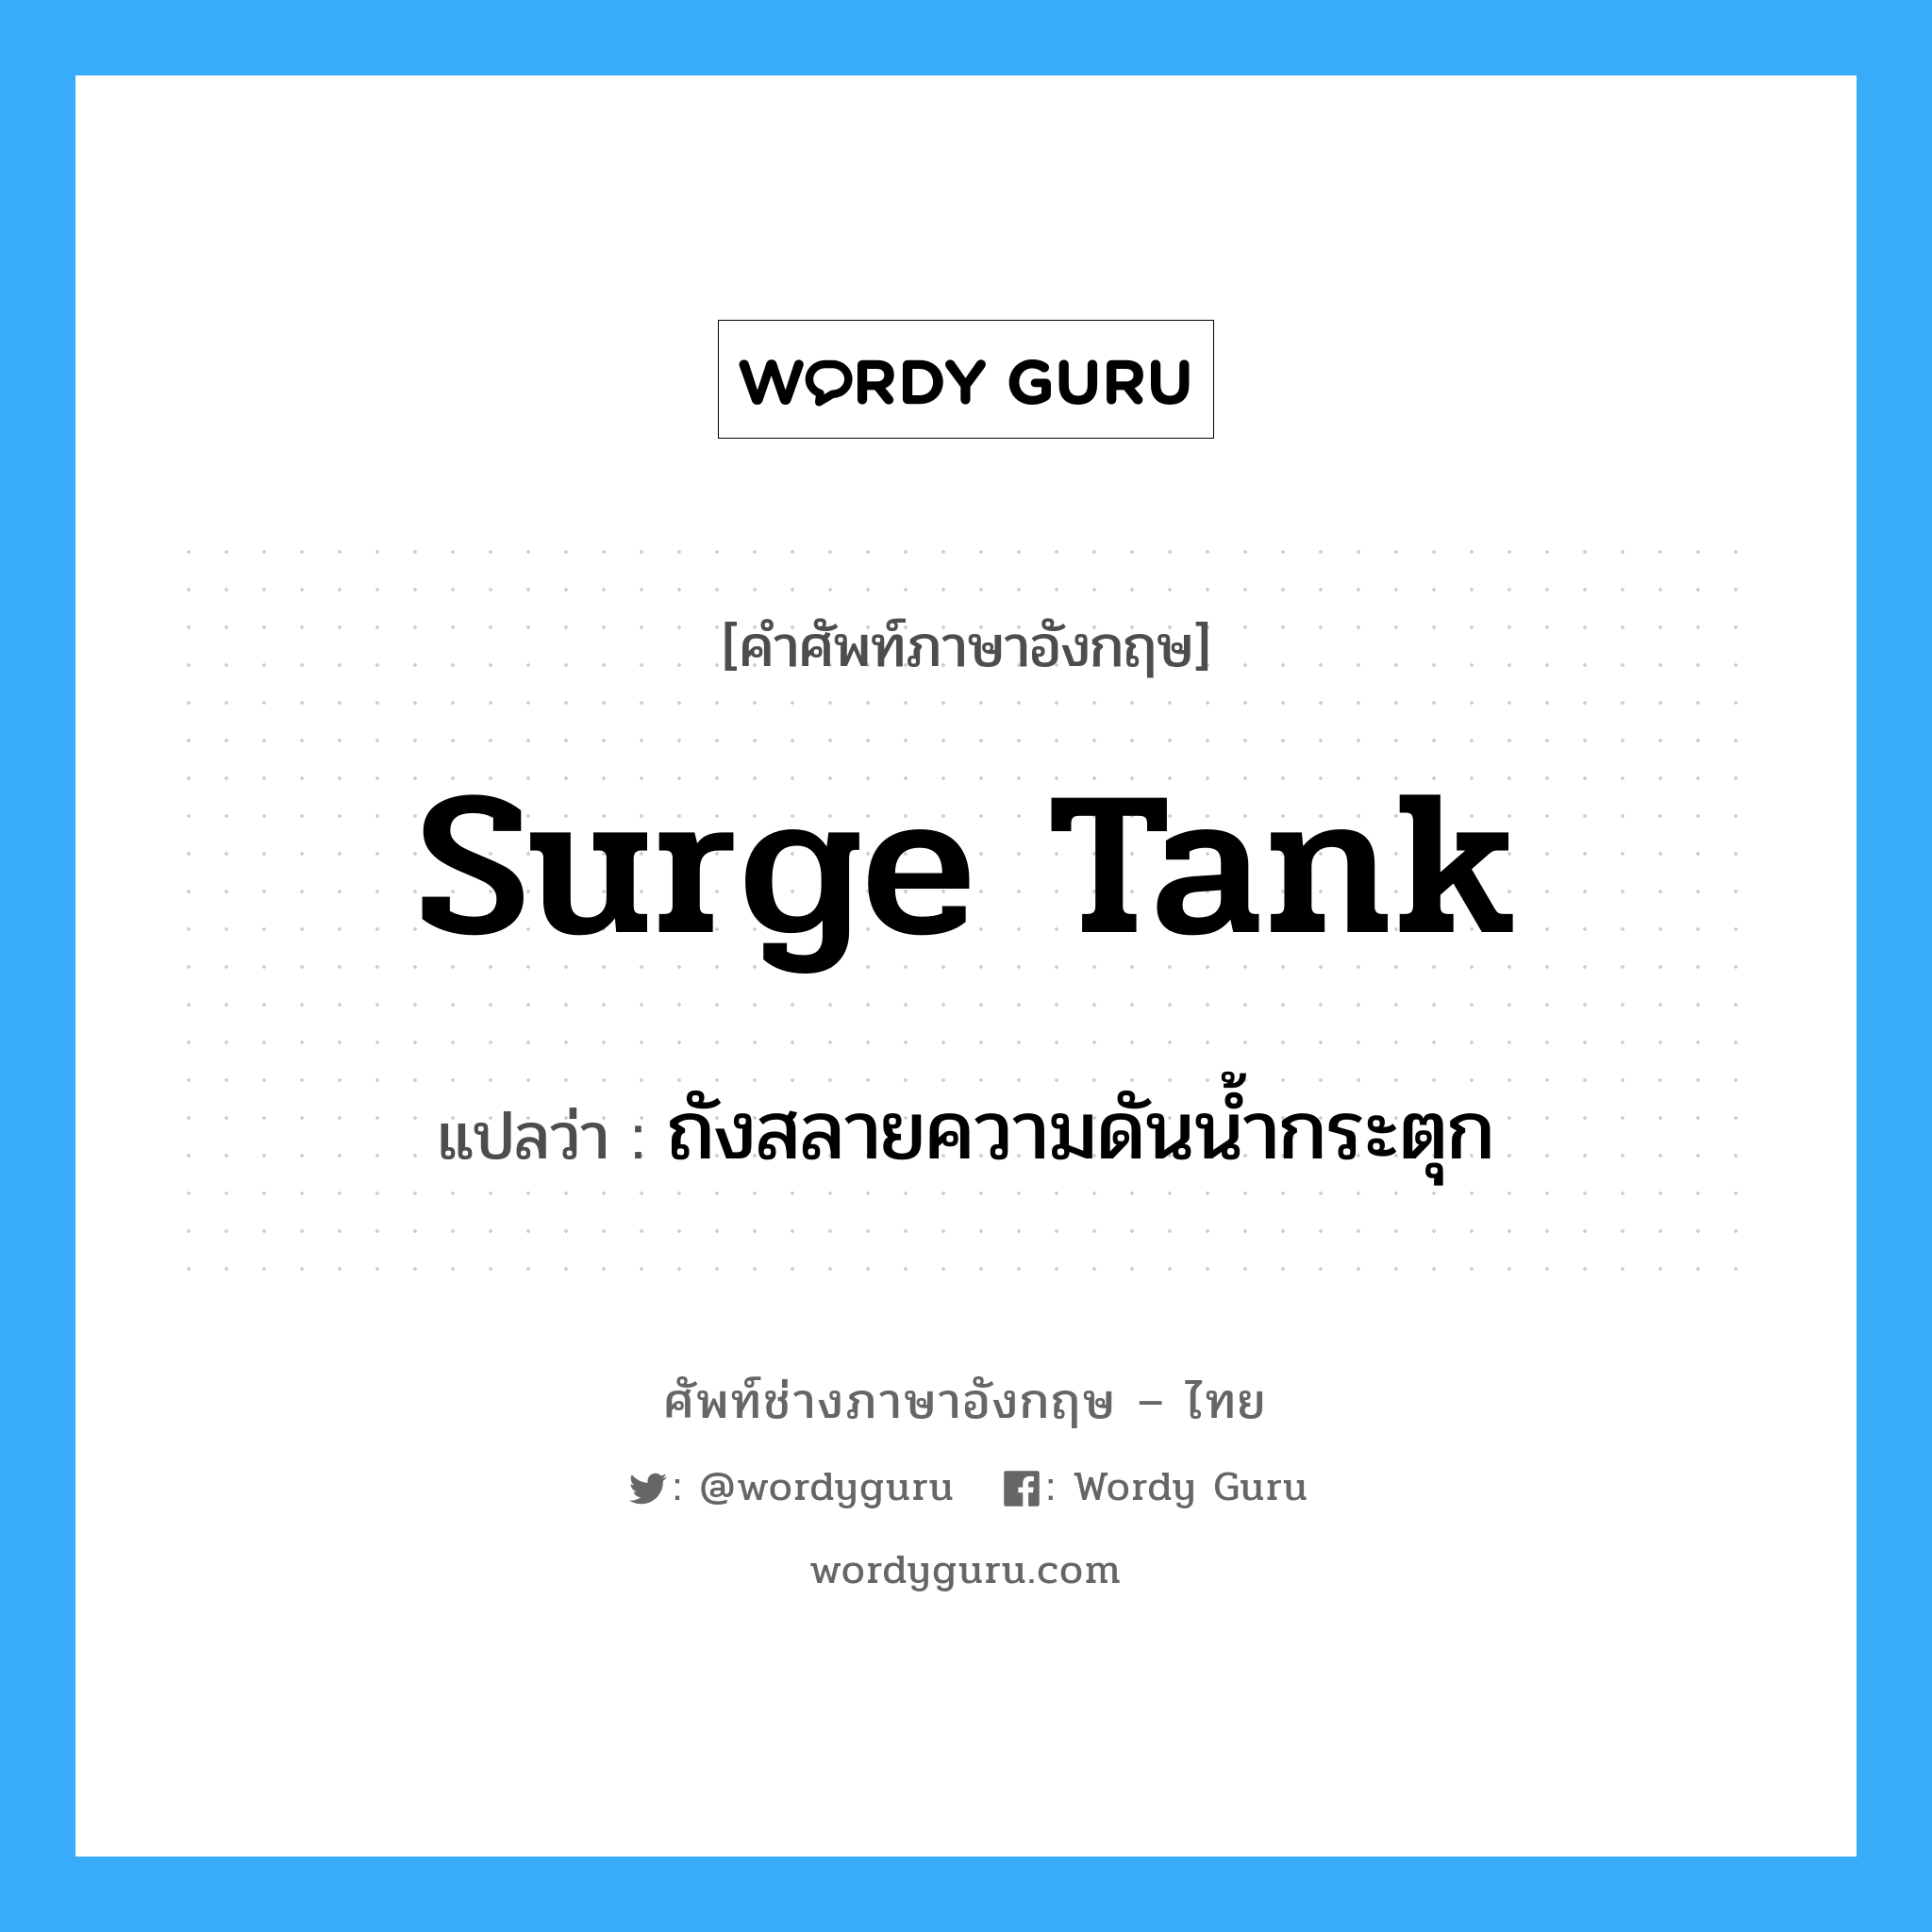 surge tank แปลว่า?, คำศัพท์ช่างภาษาอังกฤษ - ไทย surge tank คำศัพท์ภาษาอังกฤษ surge tank แปลว่า ถังสลายความดันน้ำกระตุก